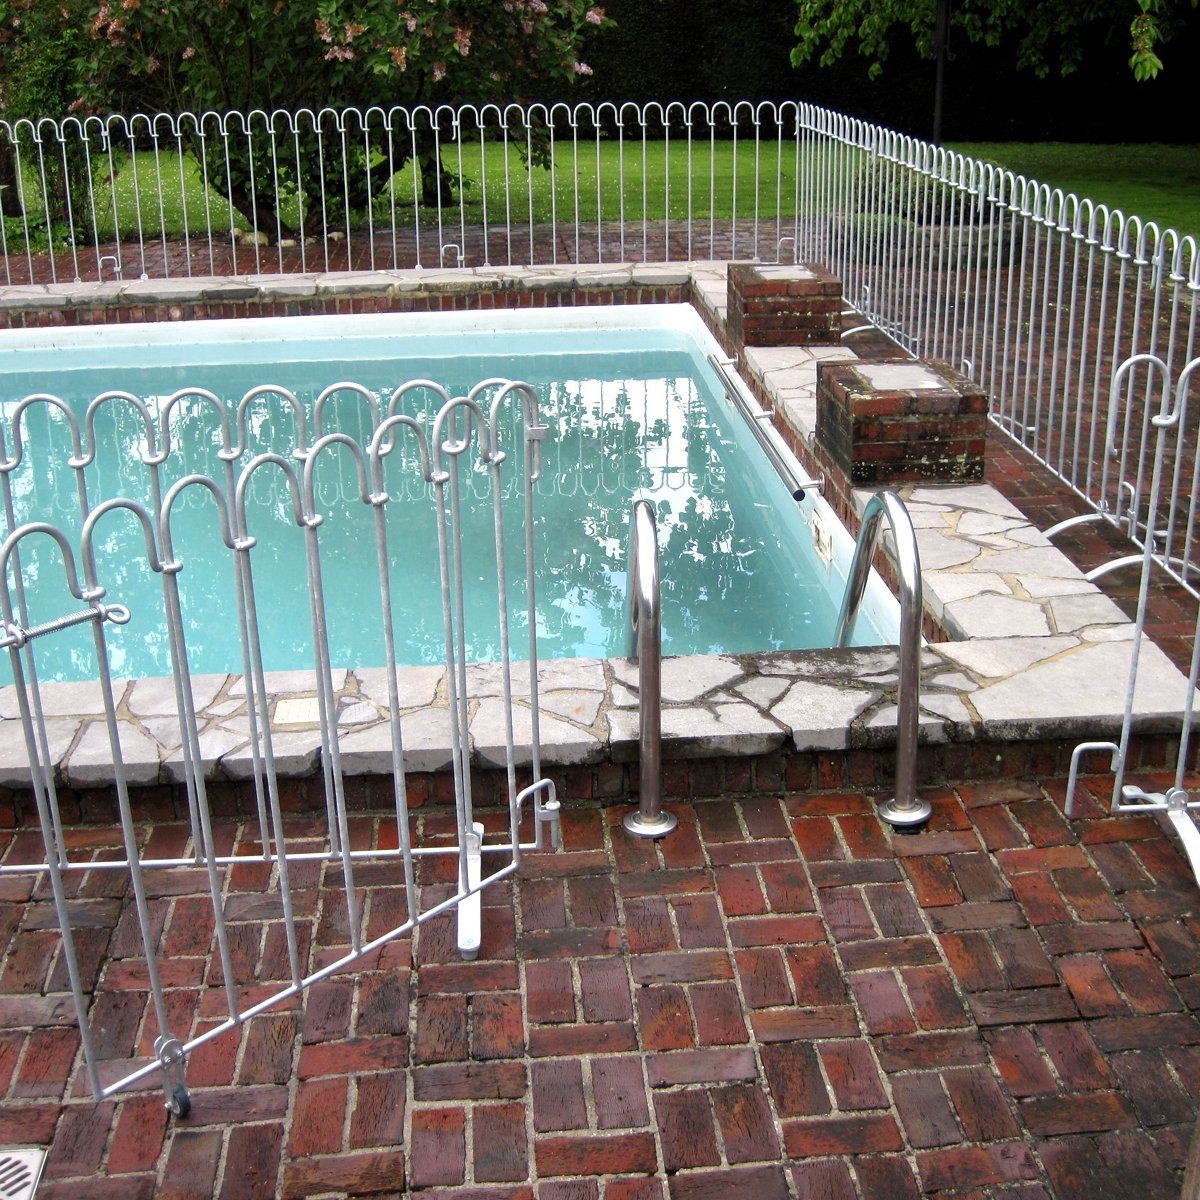 Porta per recinzione di sicurezza per bambini / recinzione per piscina